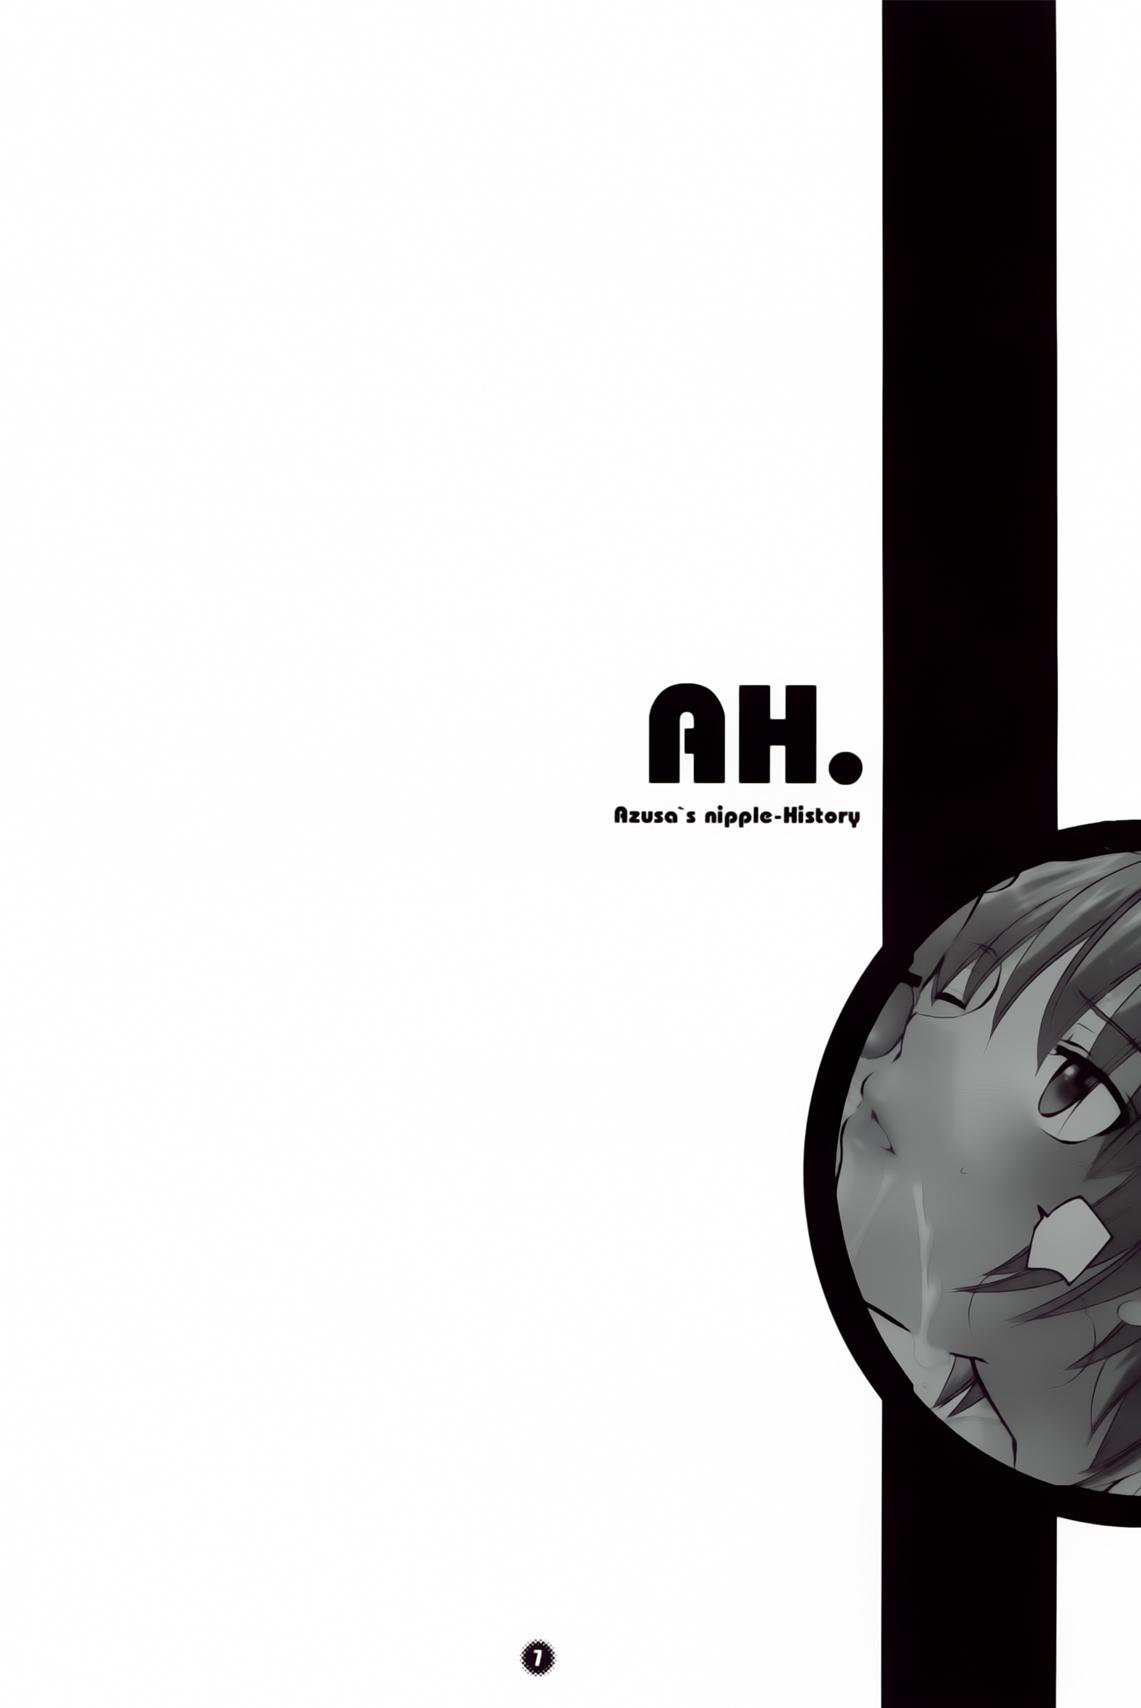 A. H. 6